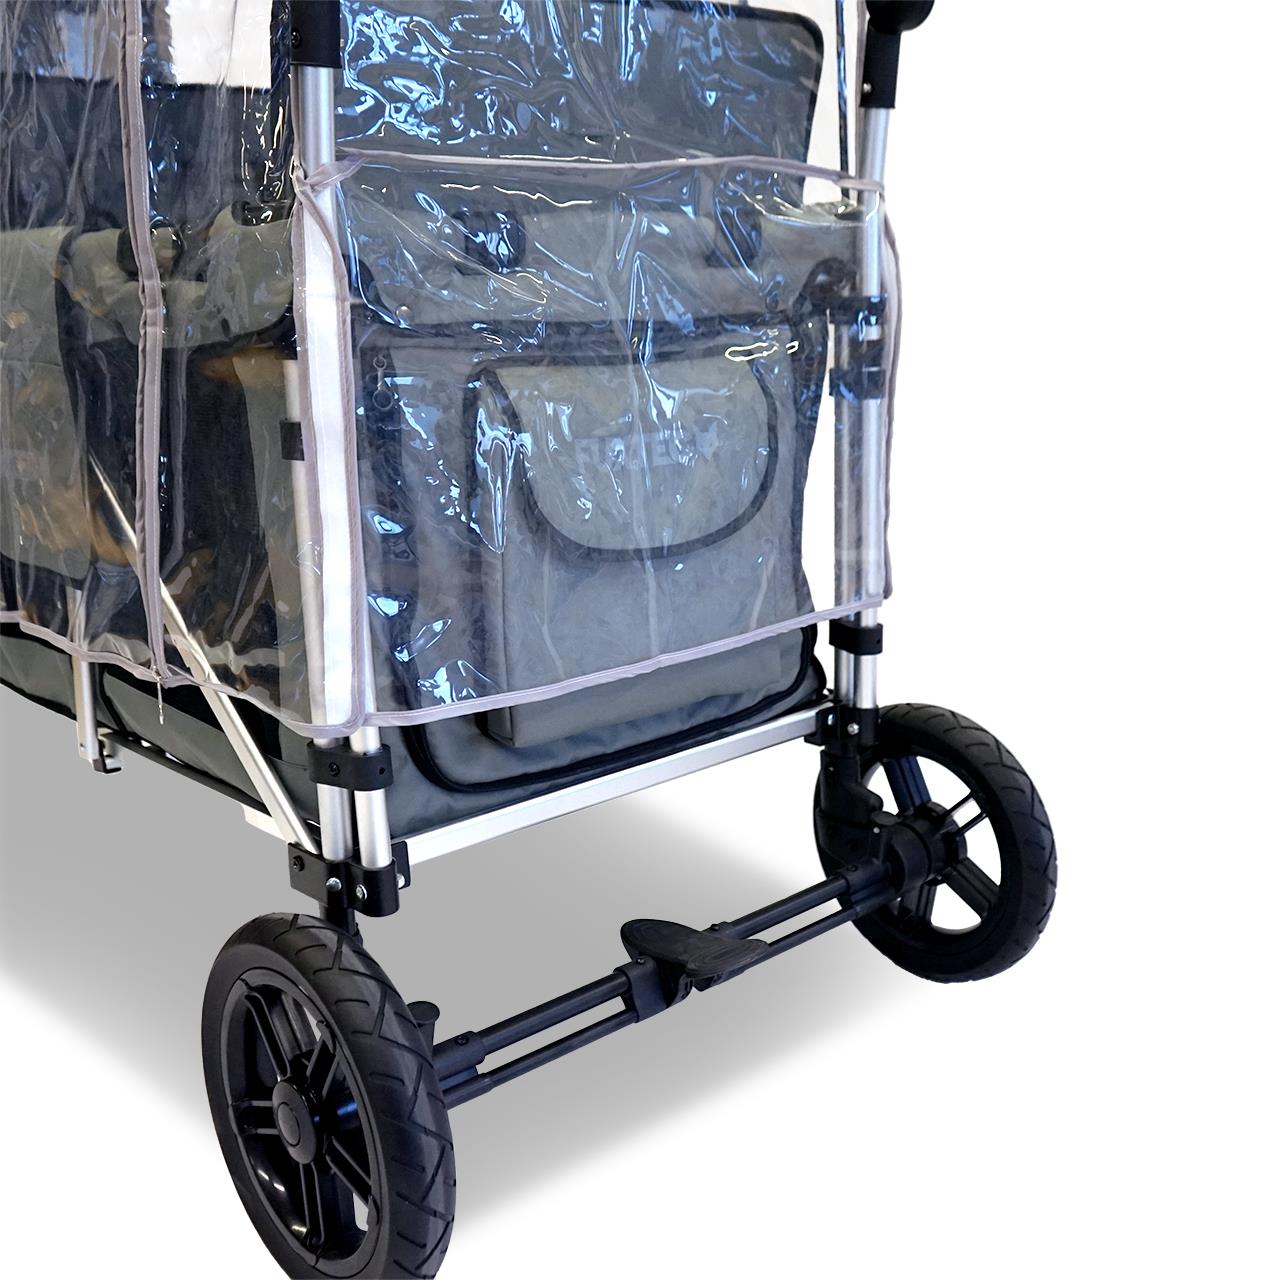 FUXTEC - Protection pluie chariot de transport pliable - Family Cruiser